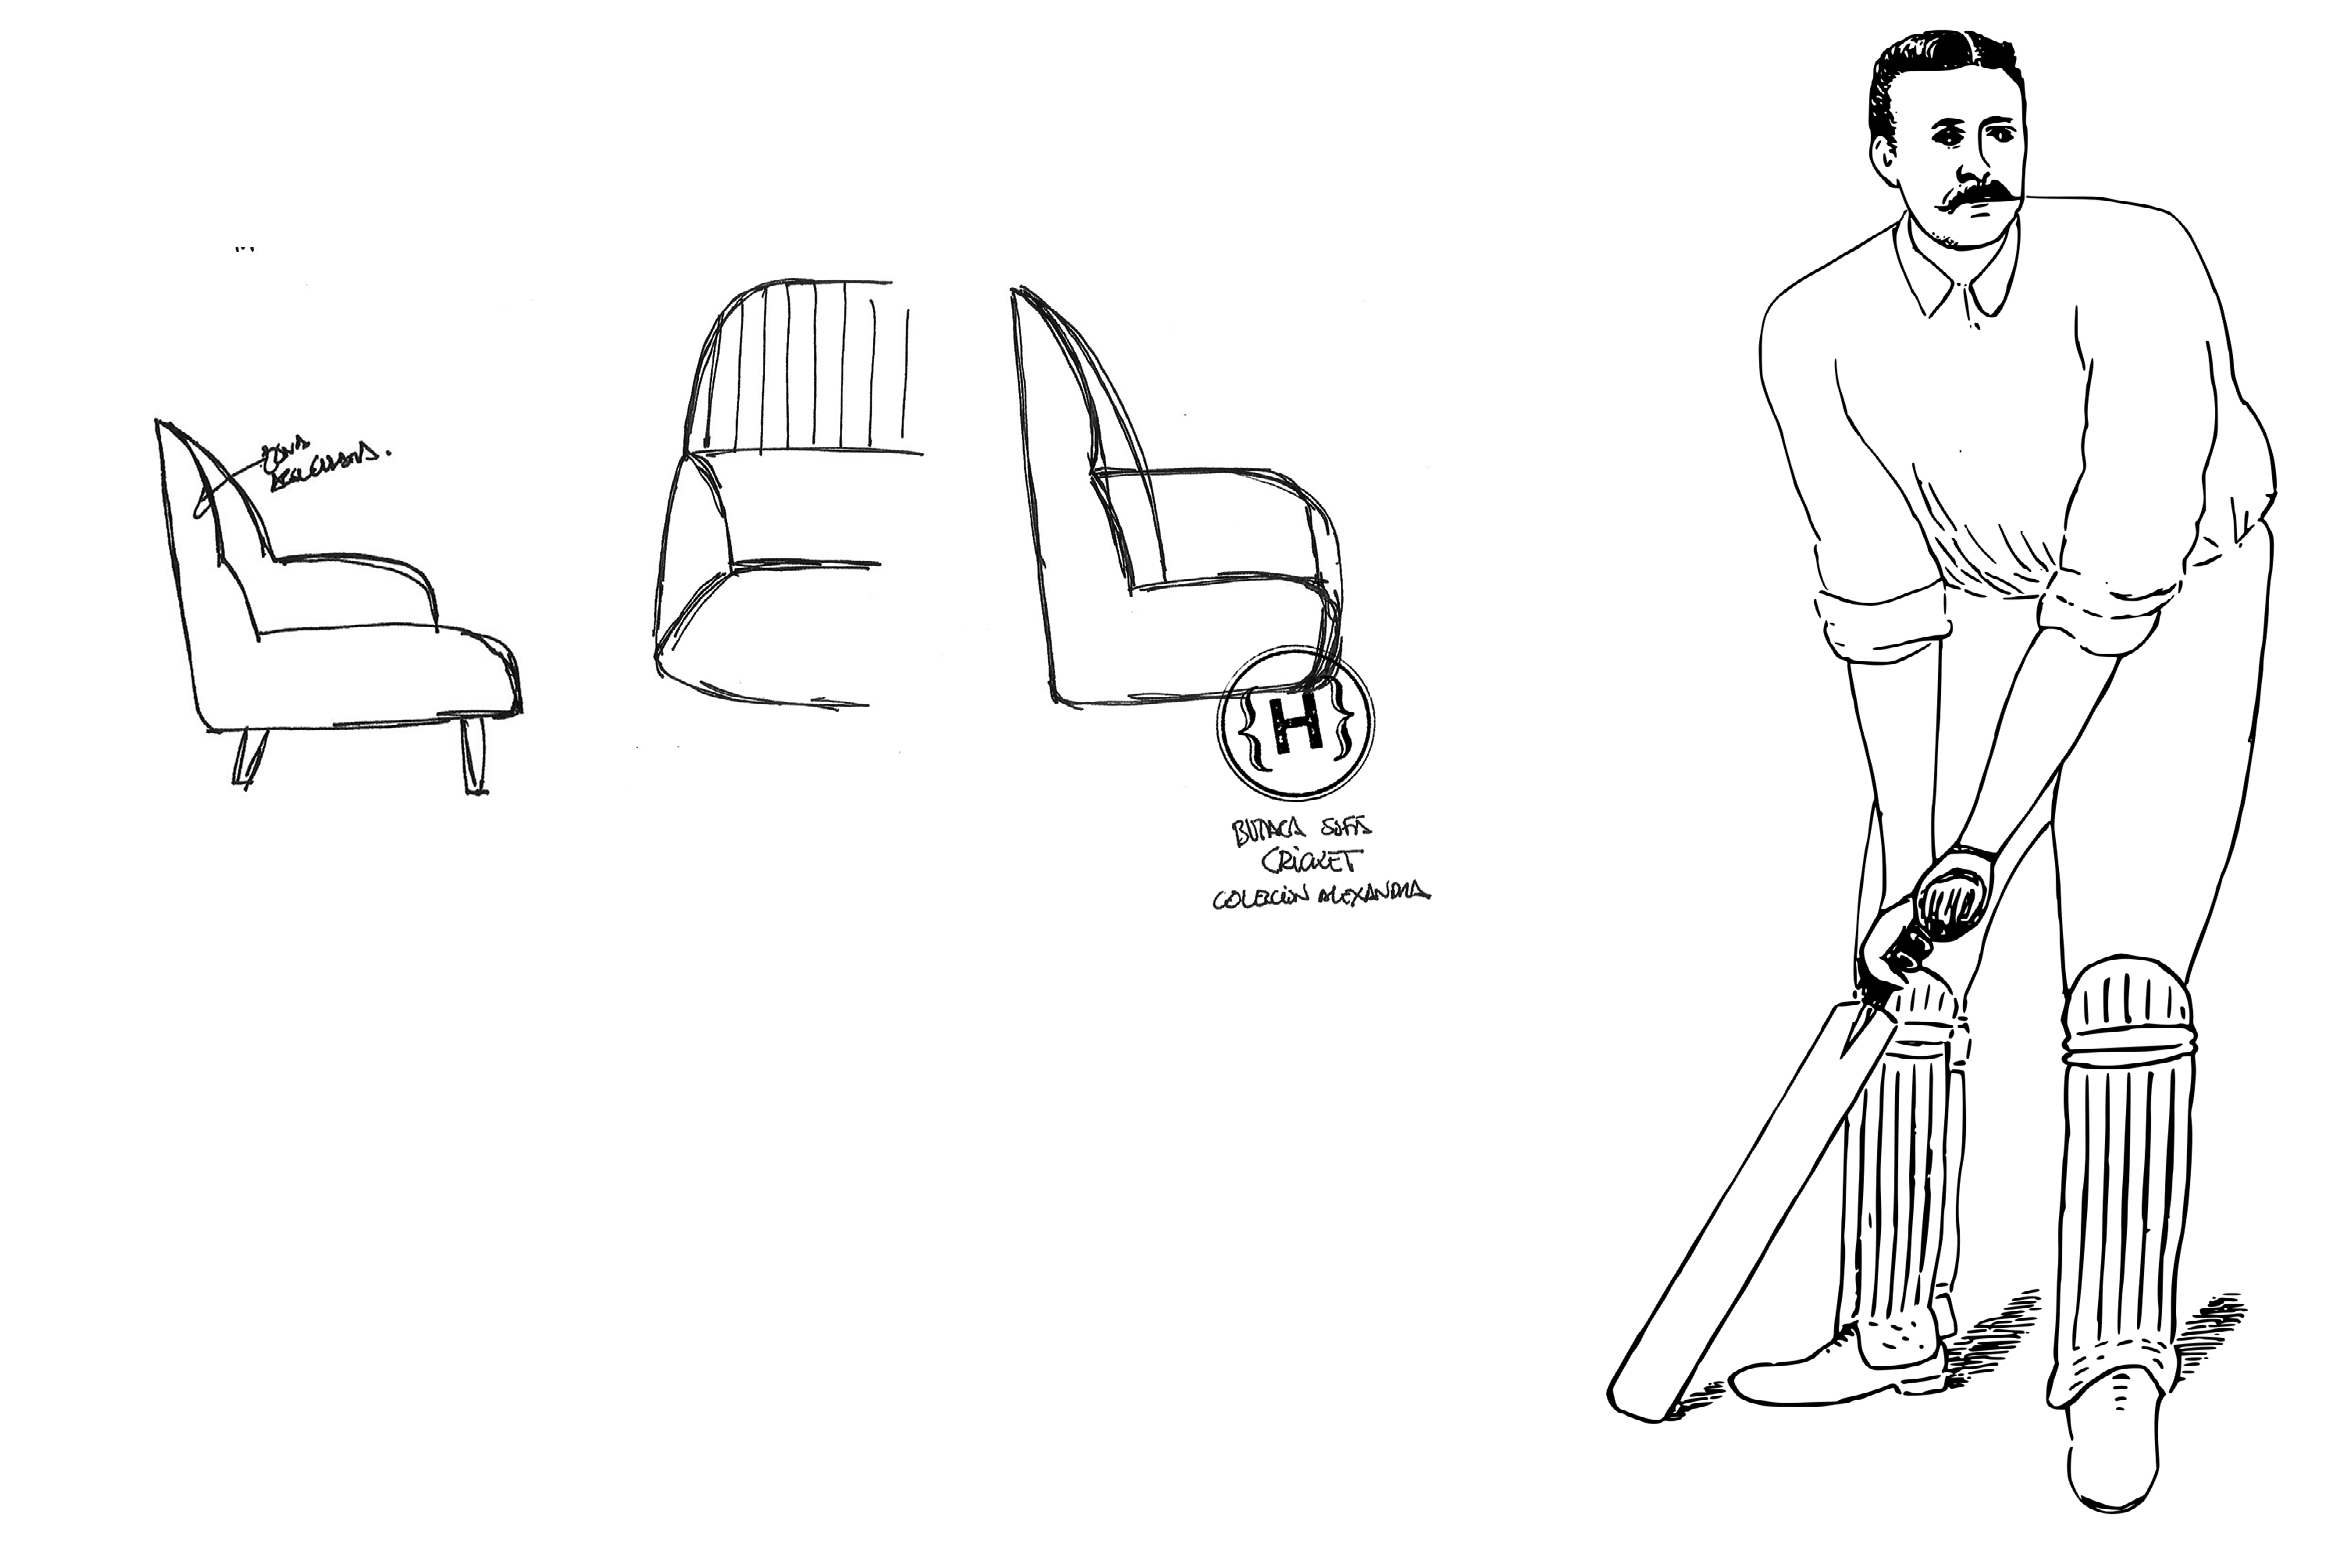 Dibujo del sillón Cricket y del jugador que ha inspirado a JMFerrero de estudihac.